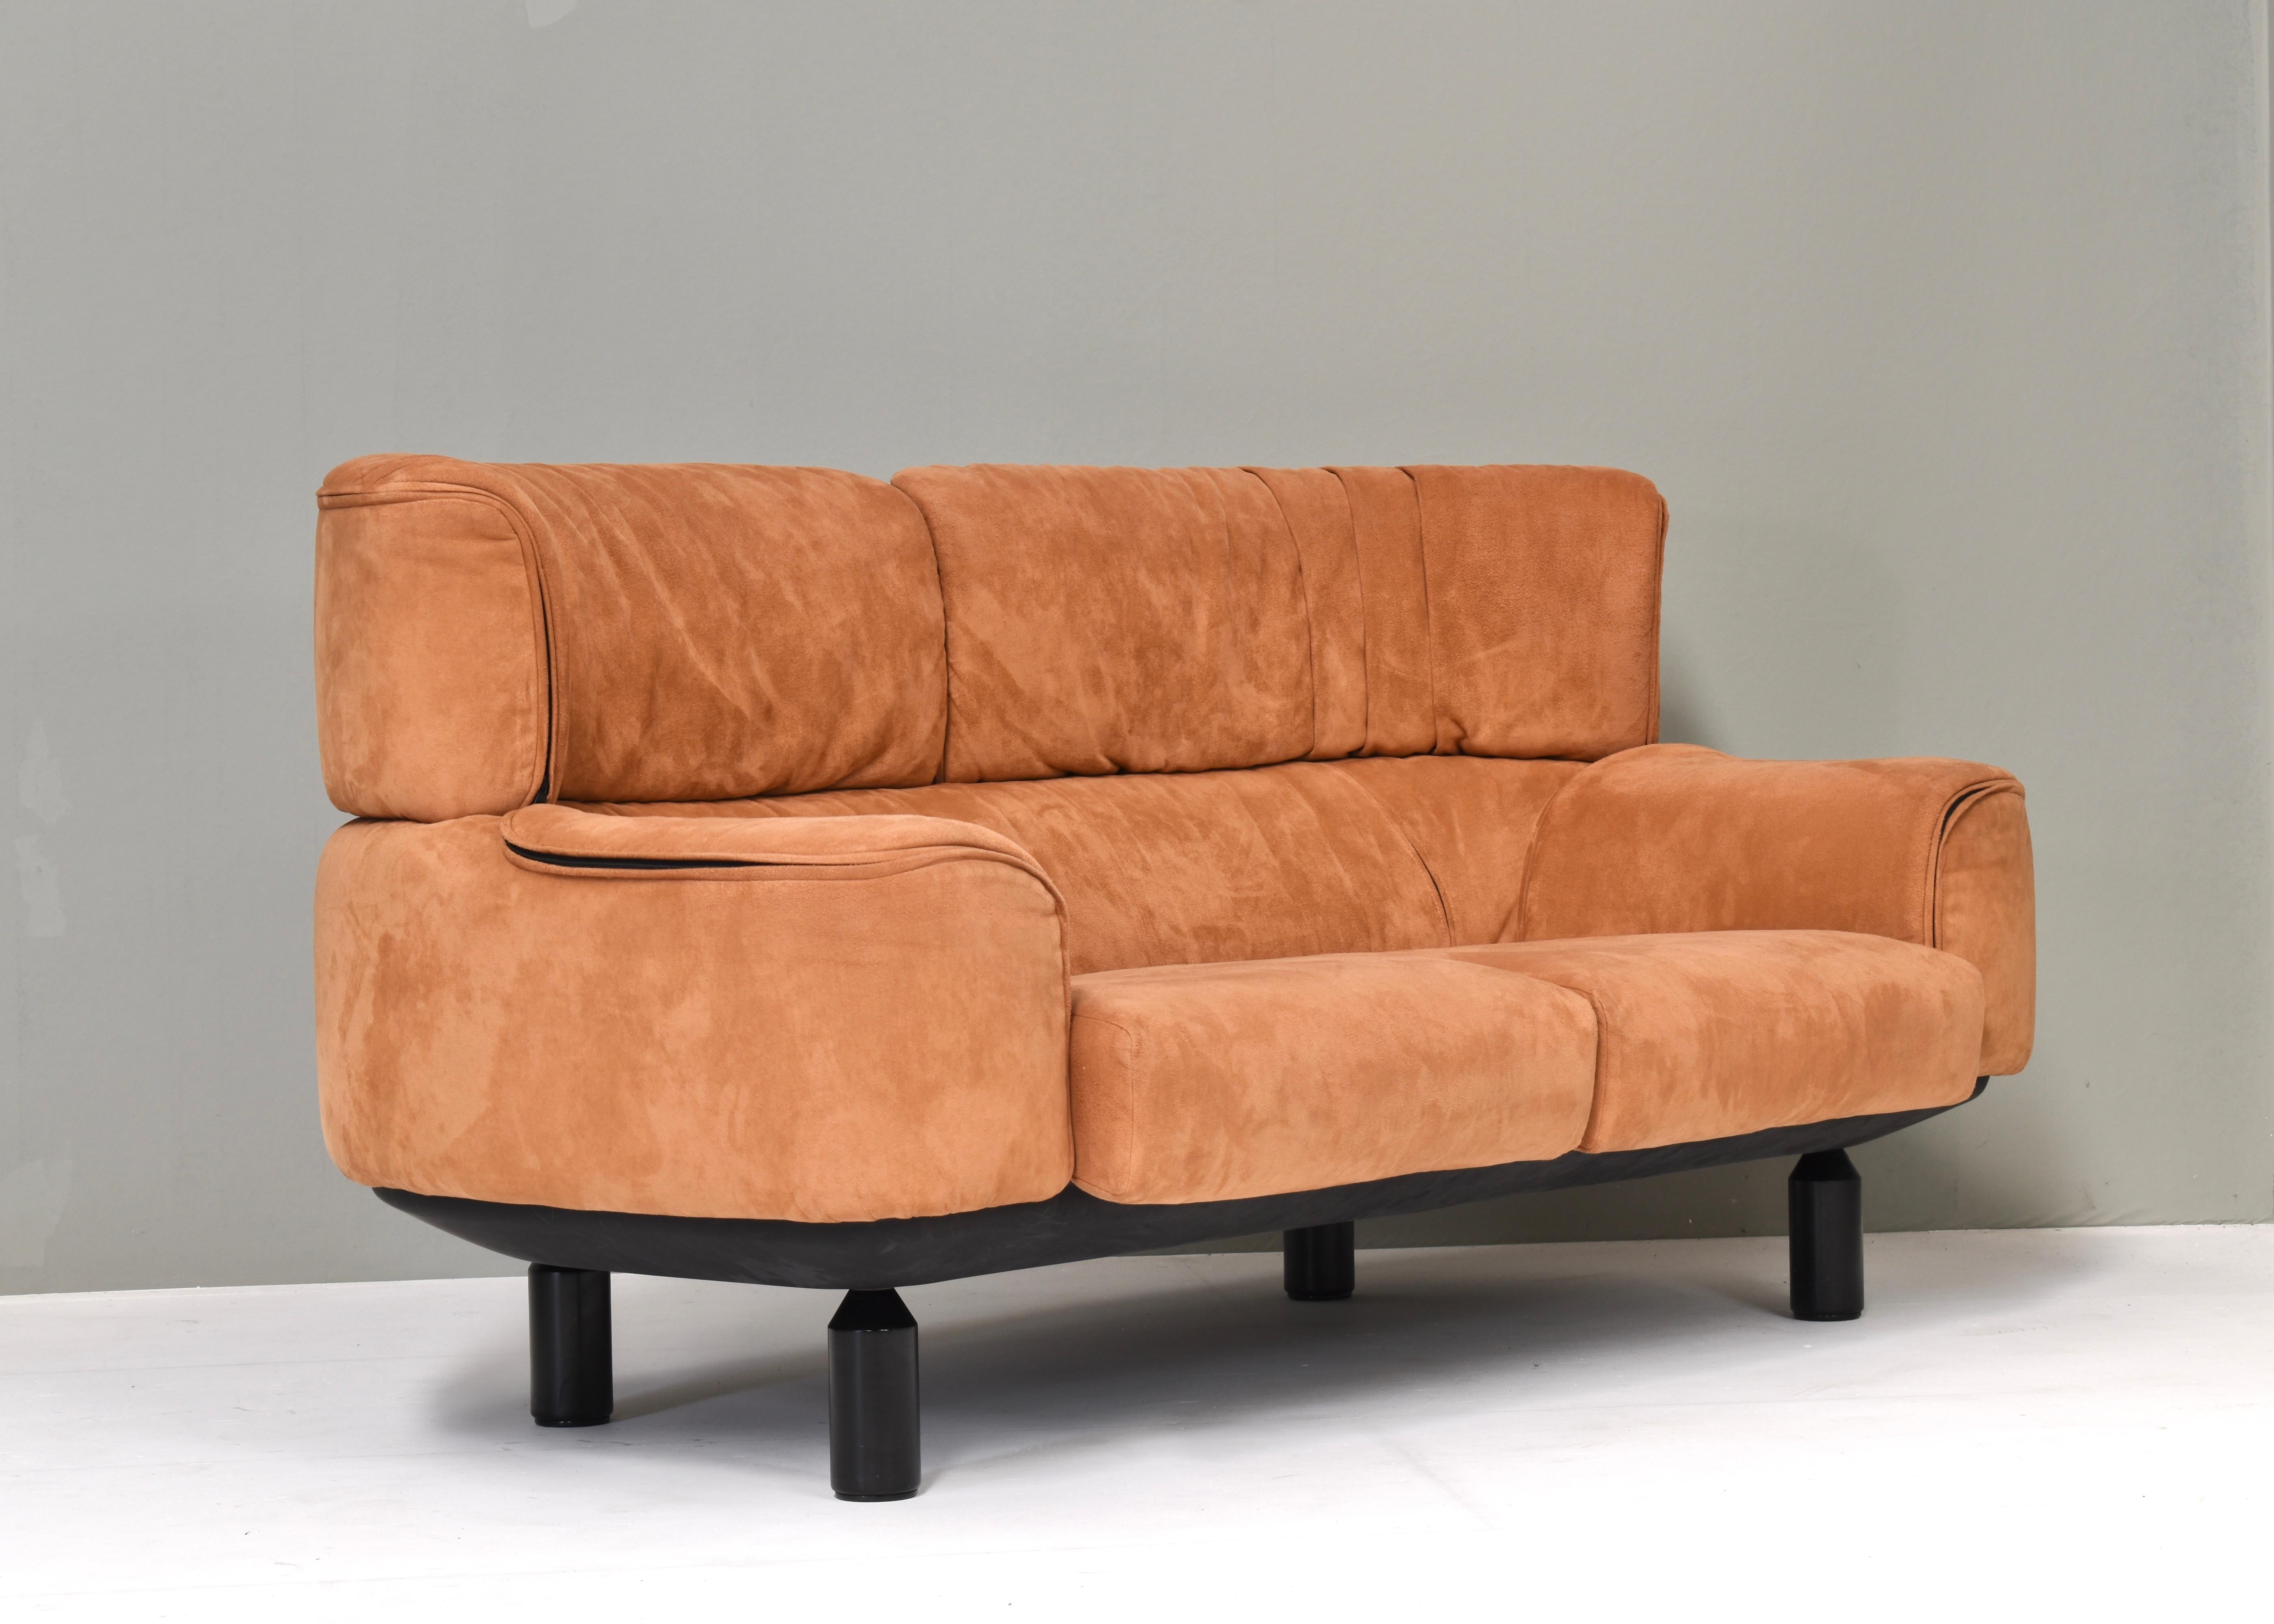 Elegantes zweisitziges Sofa, entworfen von Gianfranco Frattini für Cassina im Jahr 1987, bezogen mit schönem Terracotta-Alcantara. Die integrierten Kopfstützen umhüllen den Sitzenden. Die Polsterung ist mit individuellen Reißverschlüssen versehen,